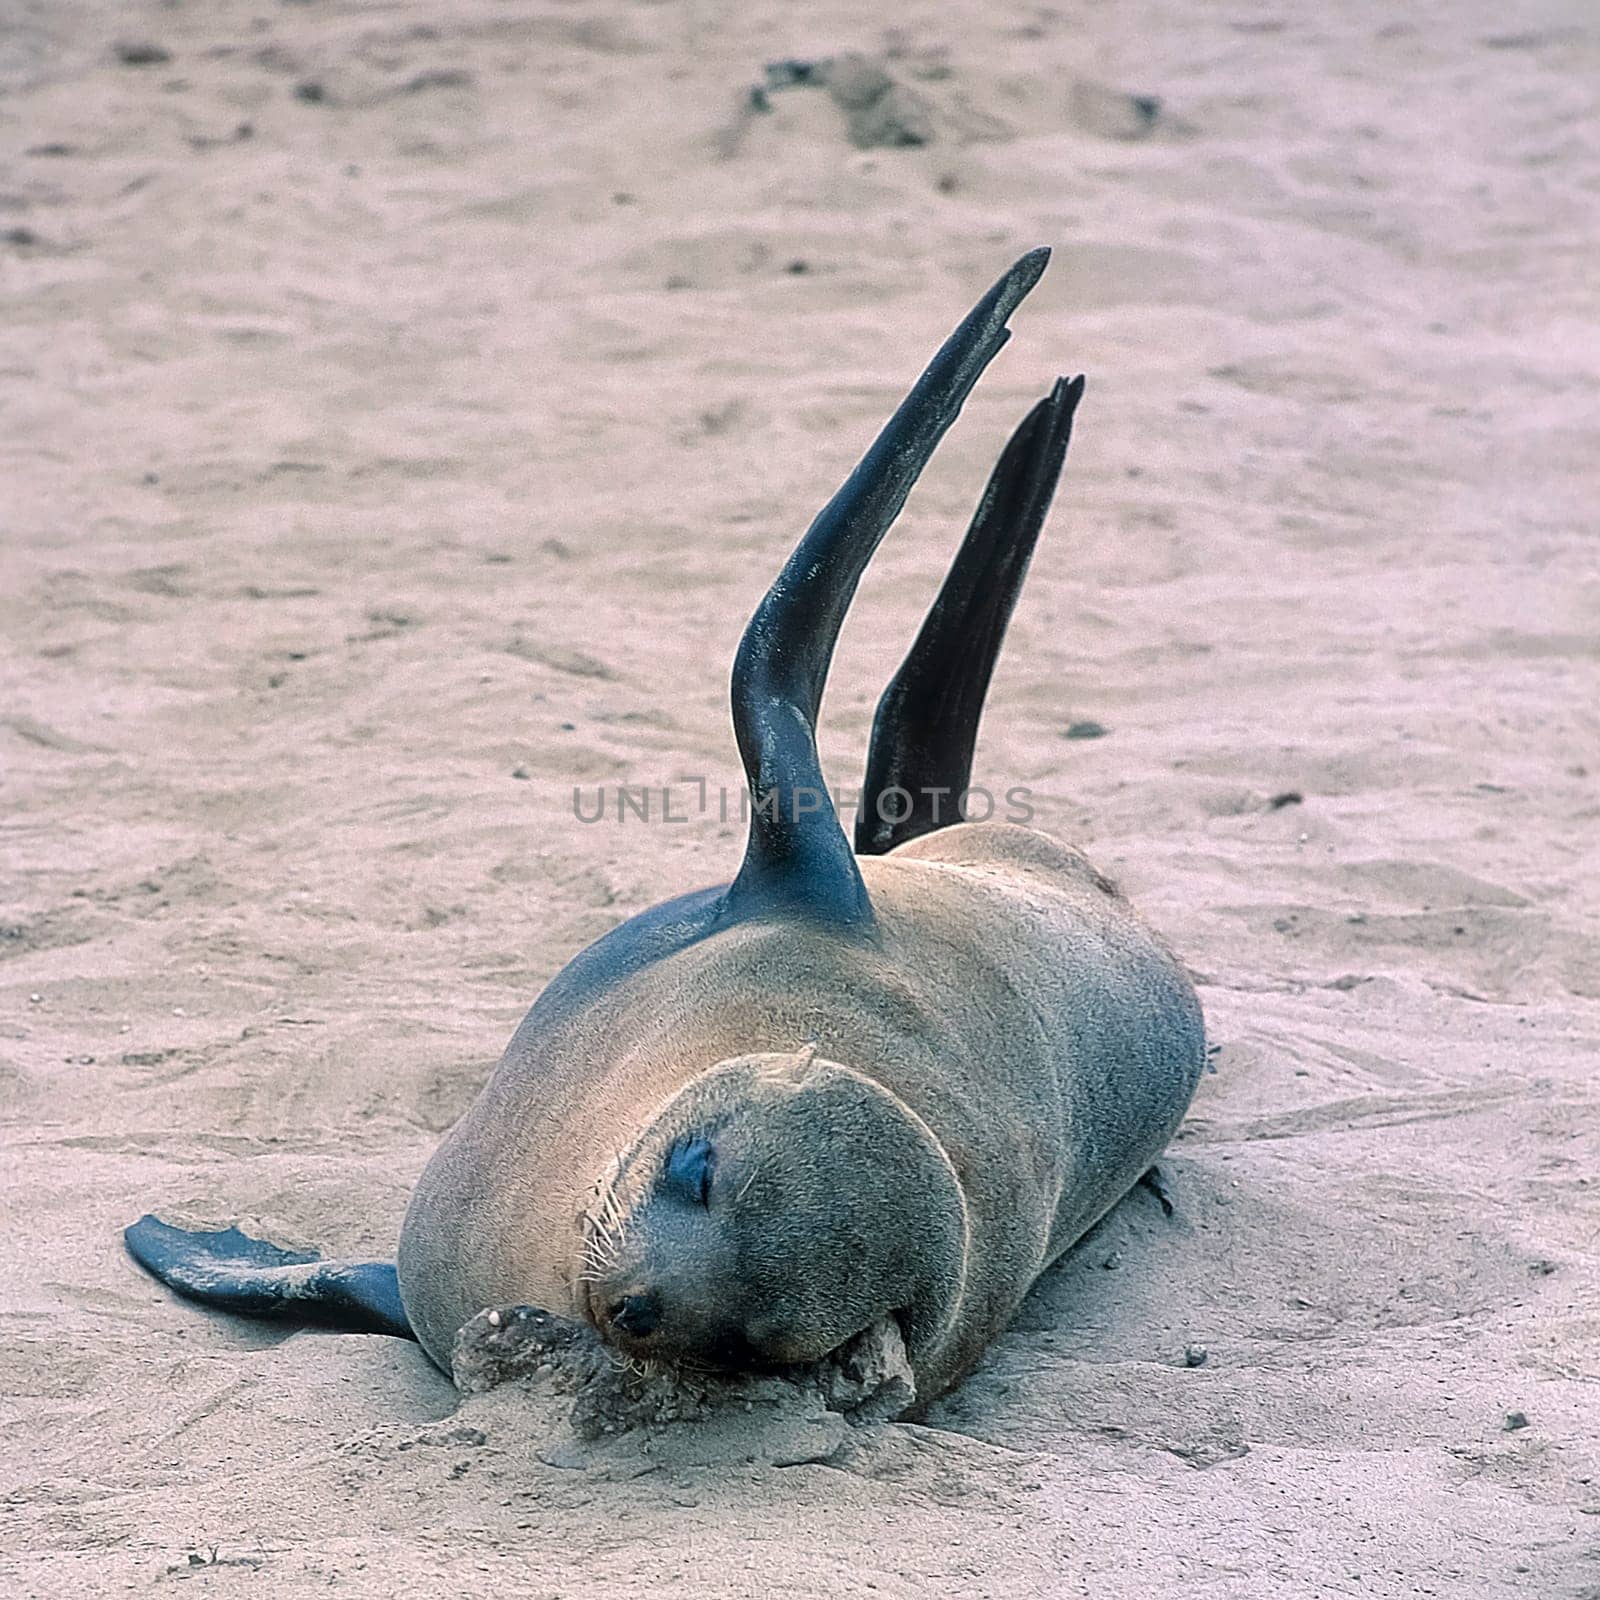 Cape Fur Seal, (Arctocephalus pusillus), Africa, Namibia, Erongo, Cape Cross